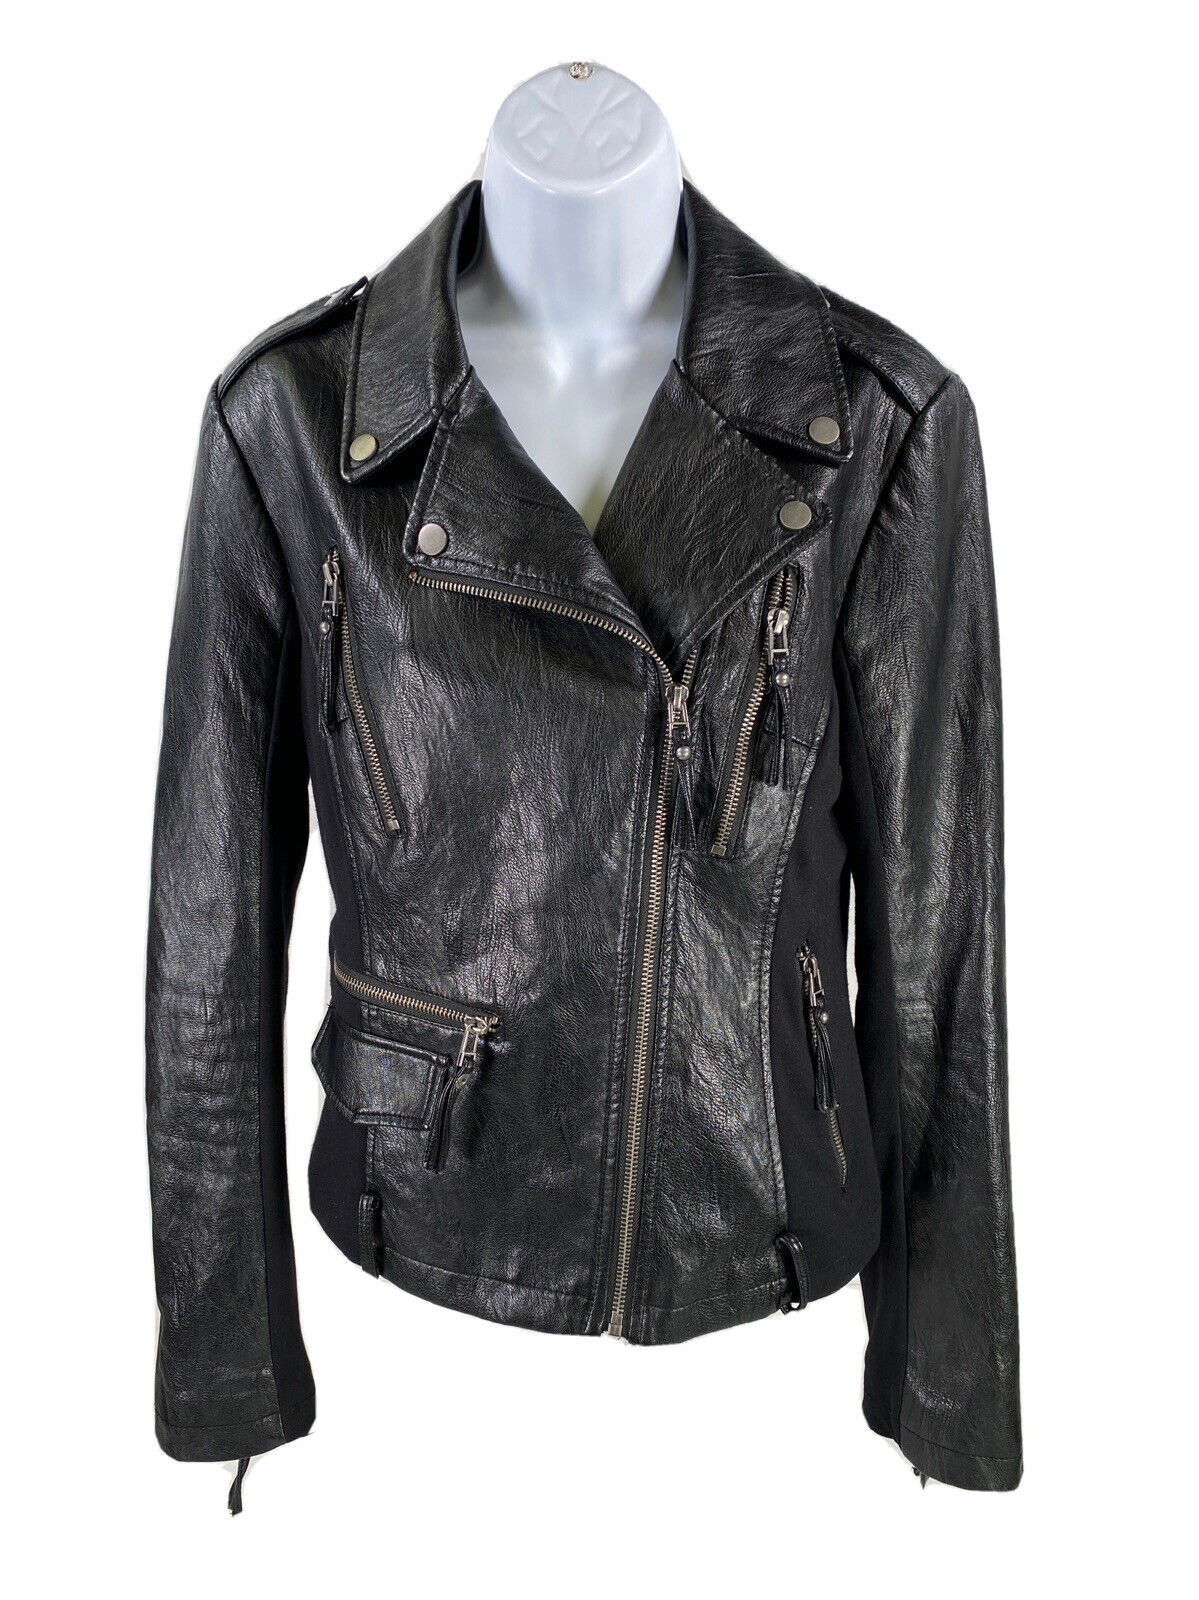 BNCI by Blanc Noir Women's Black Faux Leather Moto Jacket - M